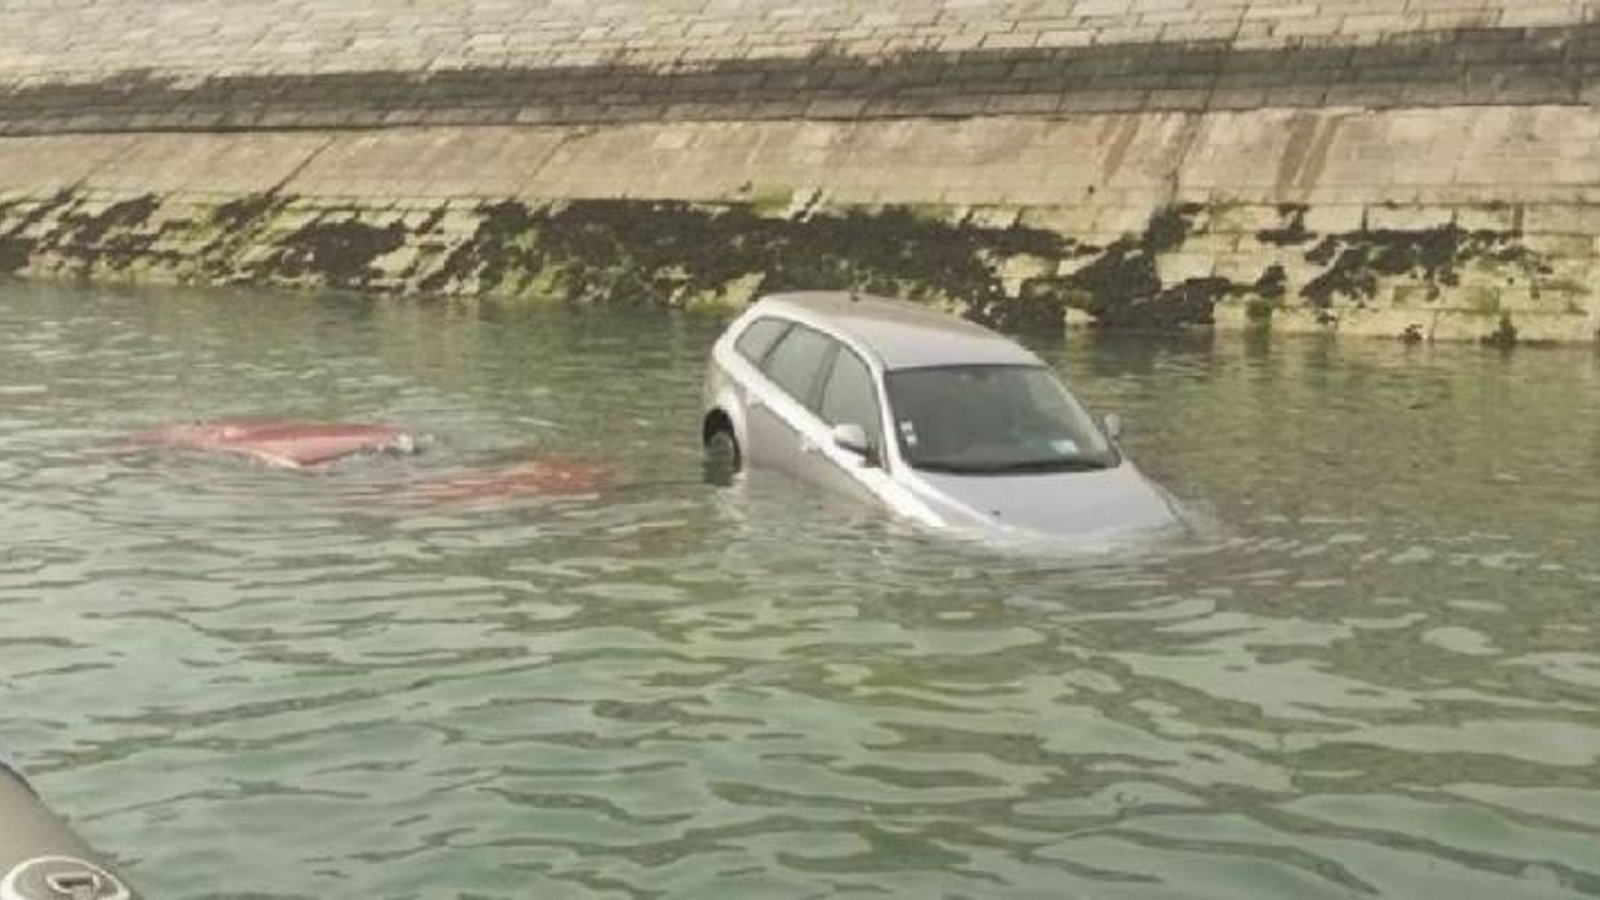 Comment briser la fenêtre d'une voiture prise dans l'eau? Ce truc pourrait sauver des vies.